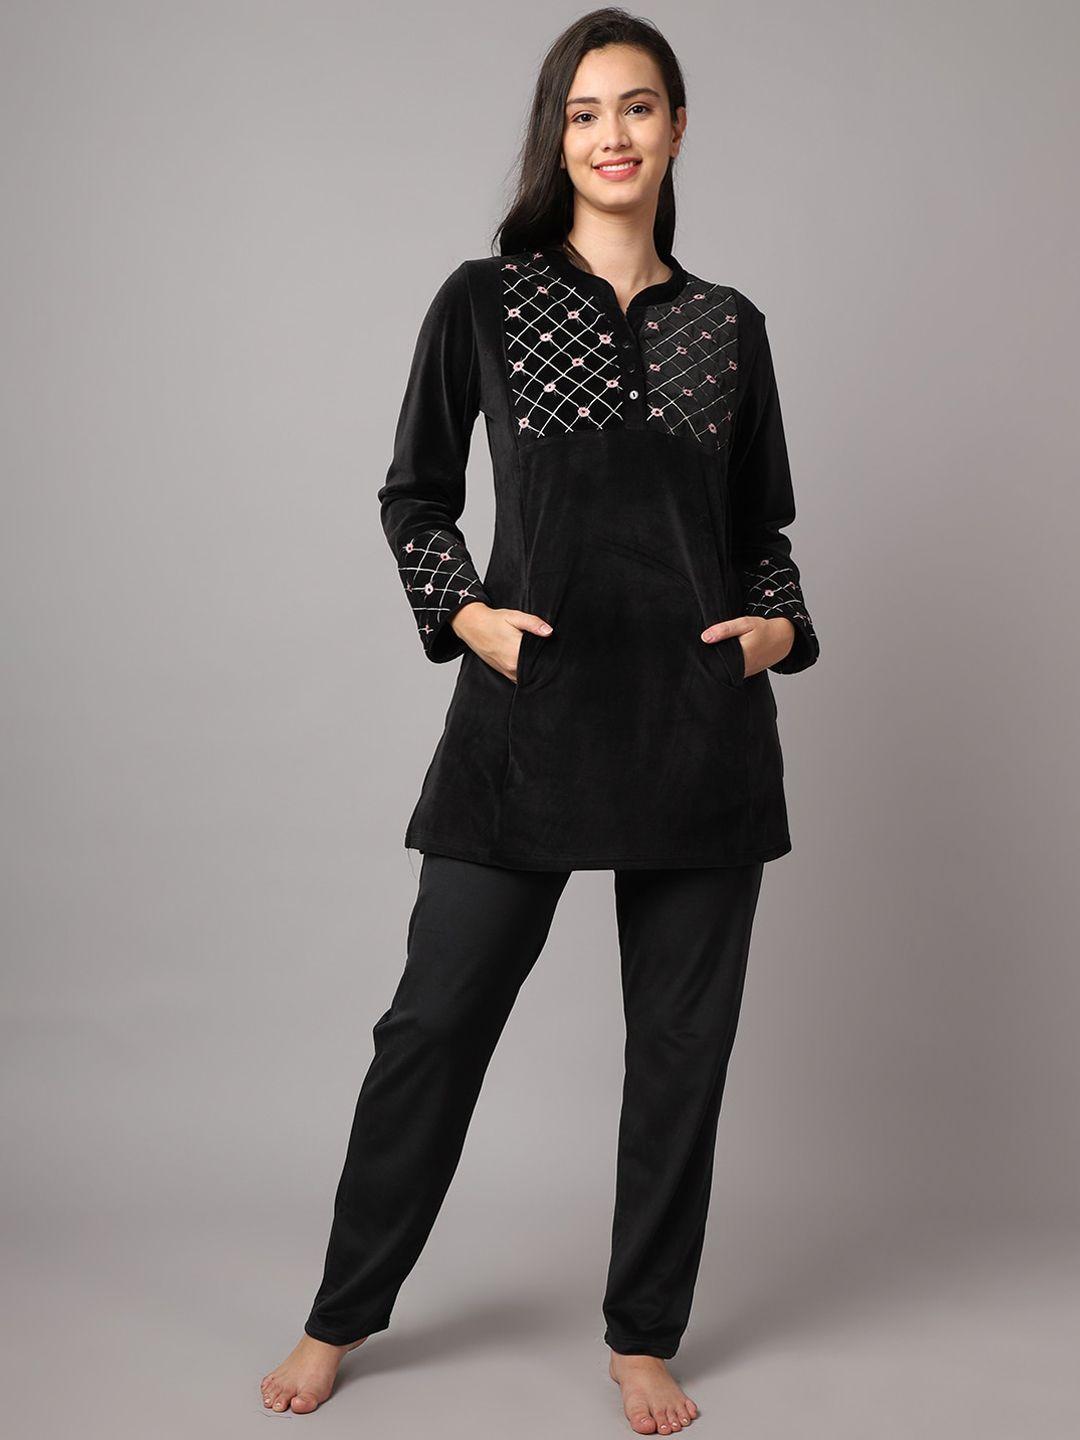 kanvin women black & white printed night suit